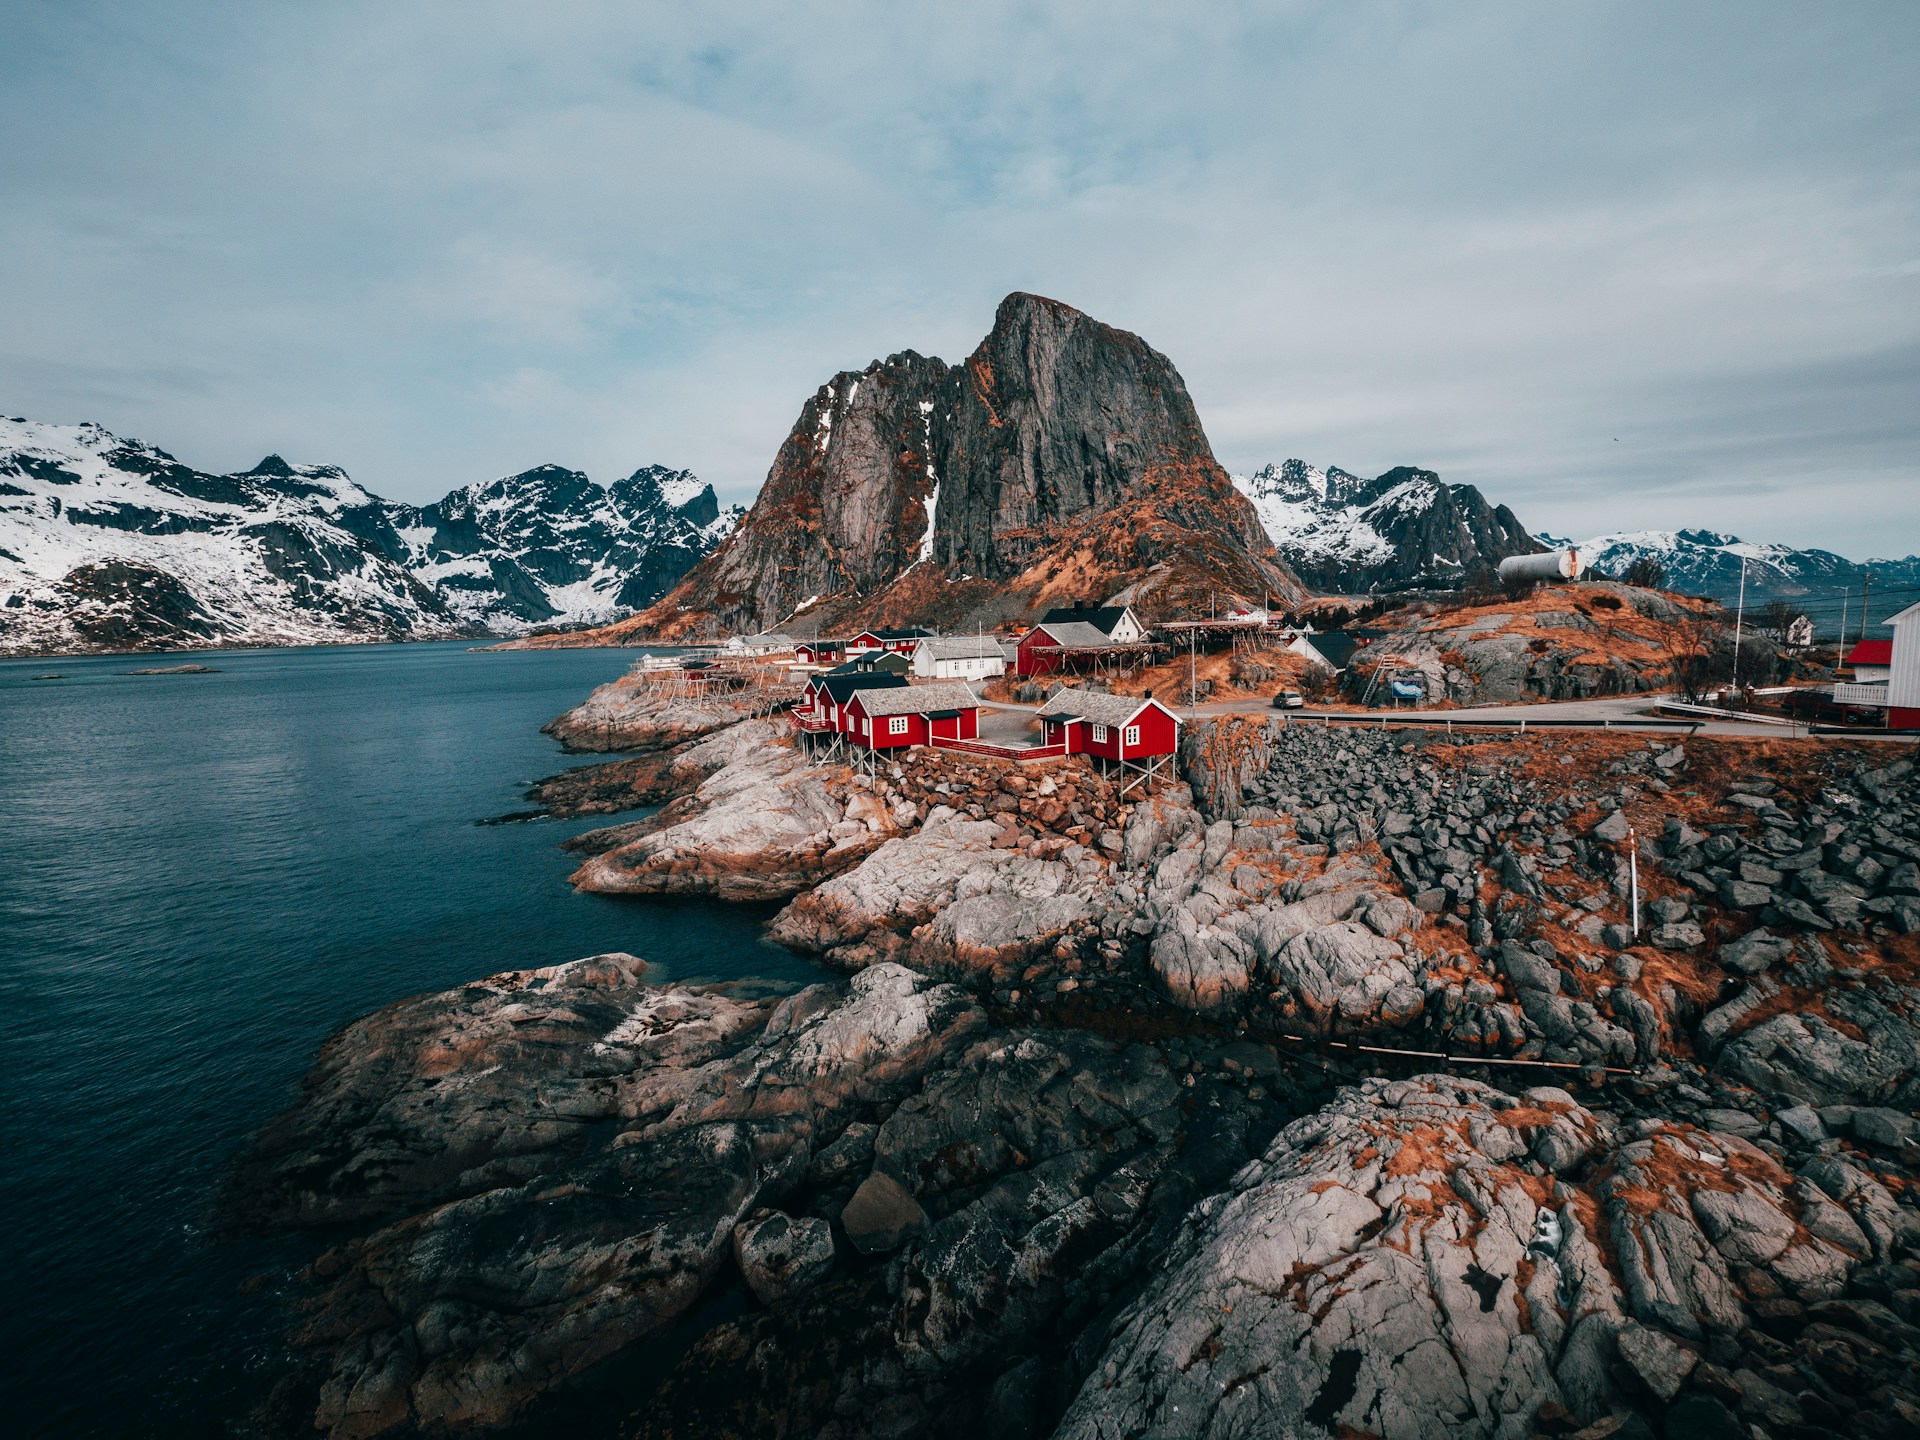 The rocky Norwegian coastline